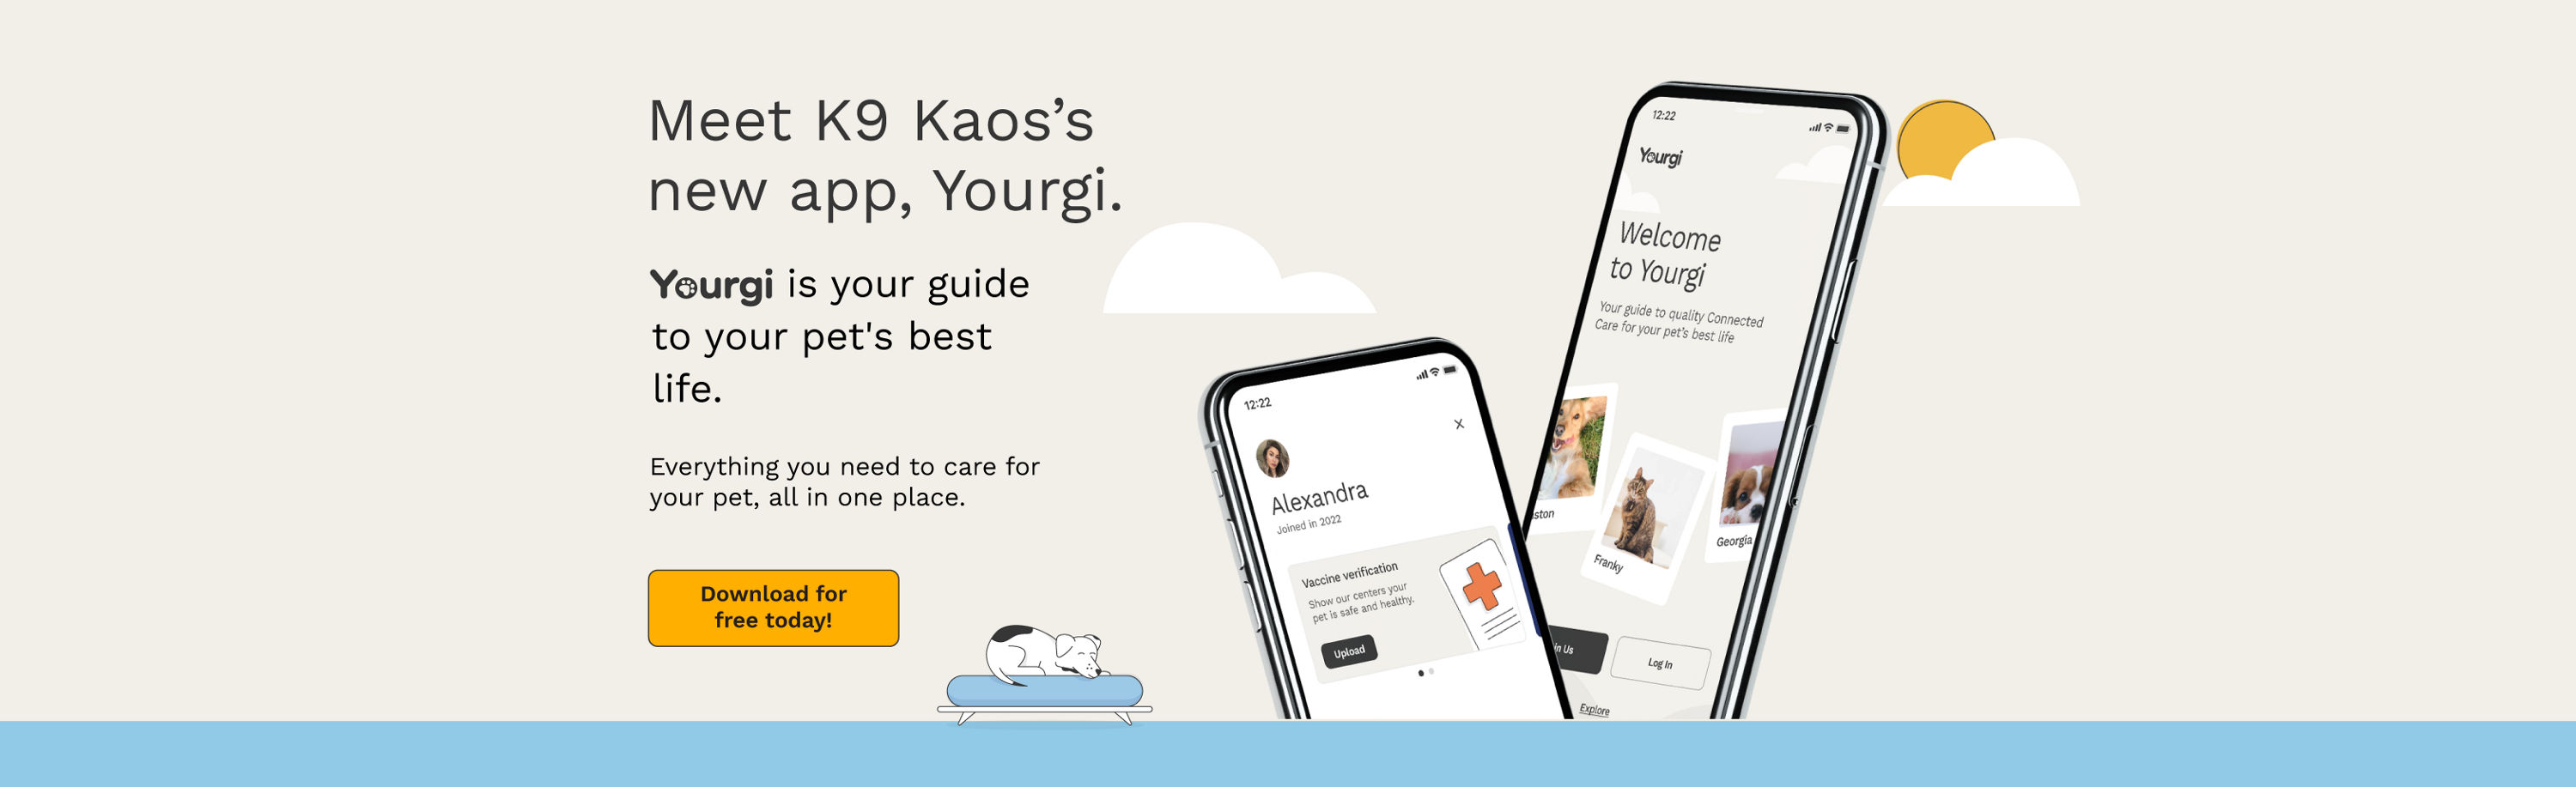 Meet K9 Kaos's new app, Yourgi.